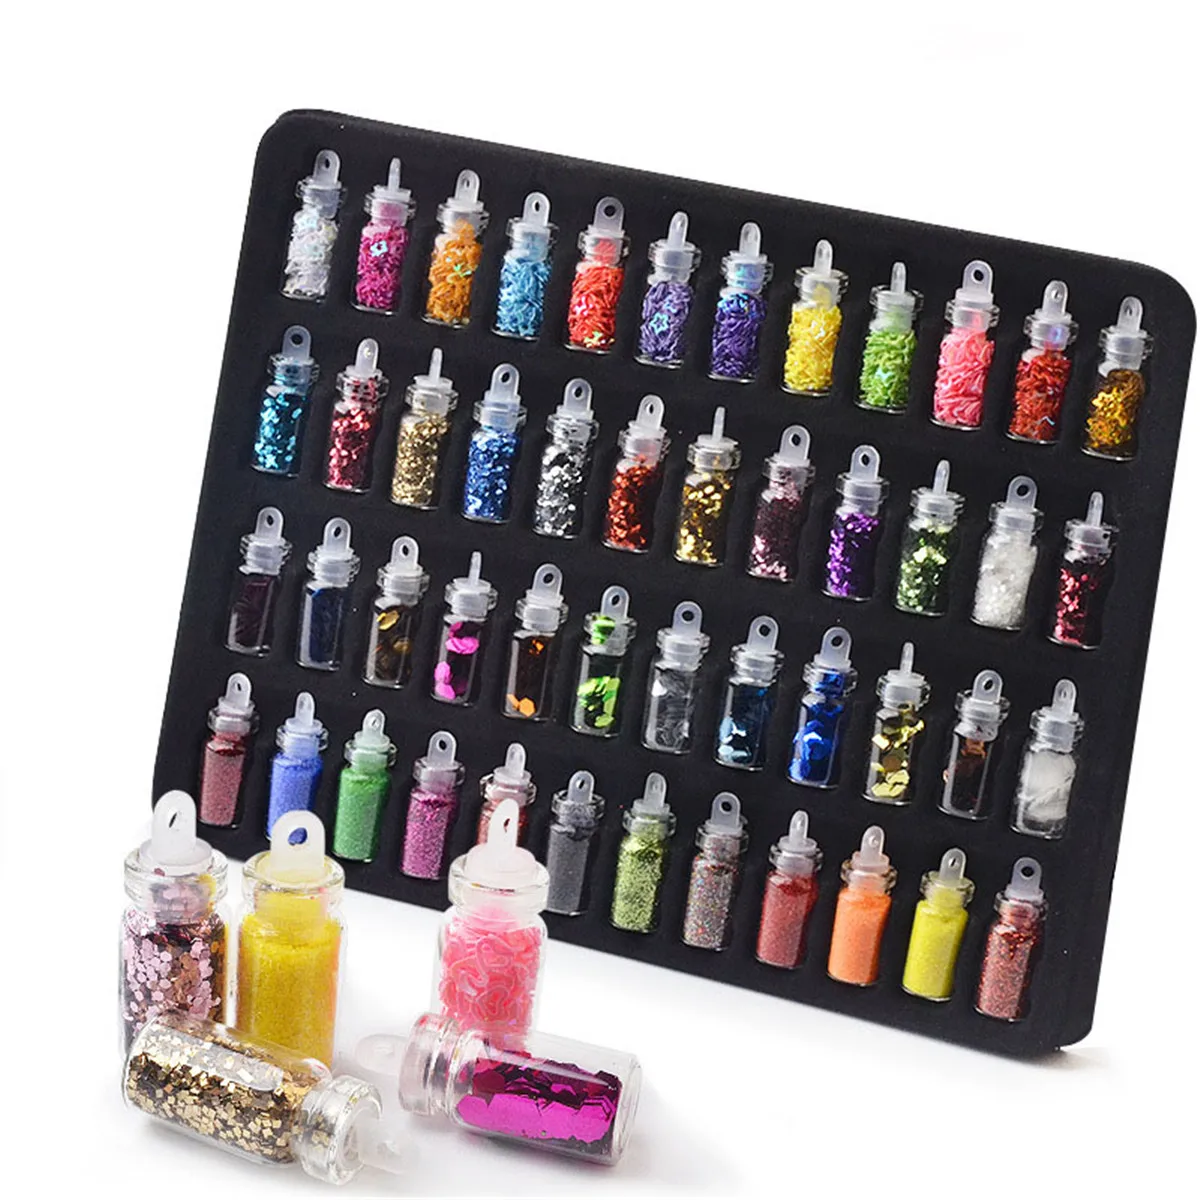 48 Flasker DIY Nail Art Charms Dekoration Slim Forsyninger Kit 3D Glitter Pulver Konfetti Akryl Design Tilbehør til Ansigt, Krop 0